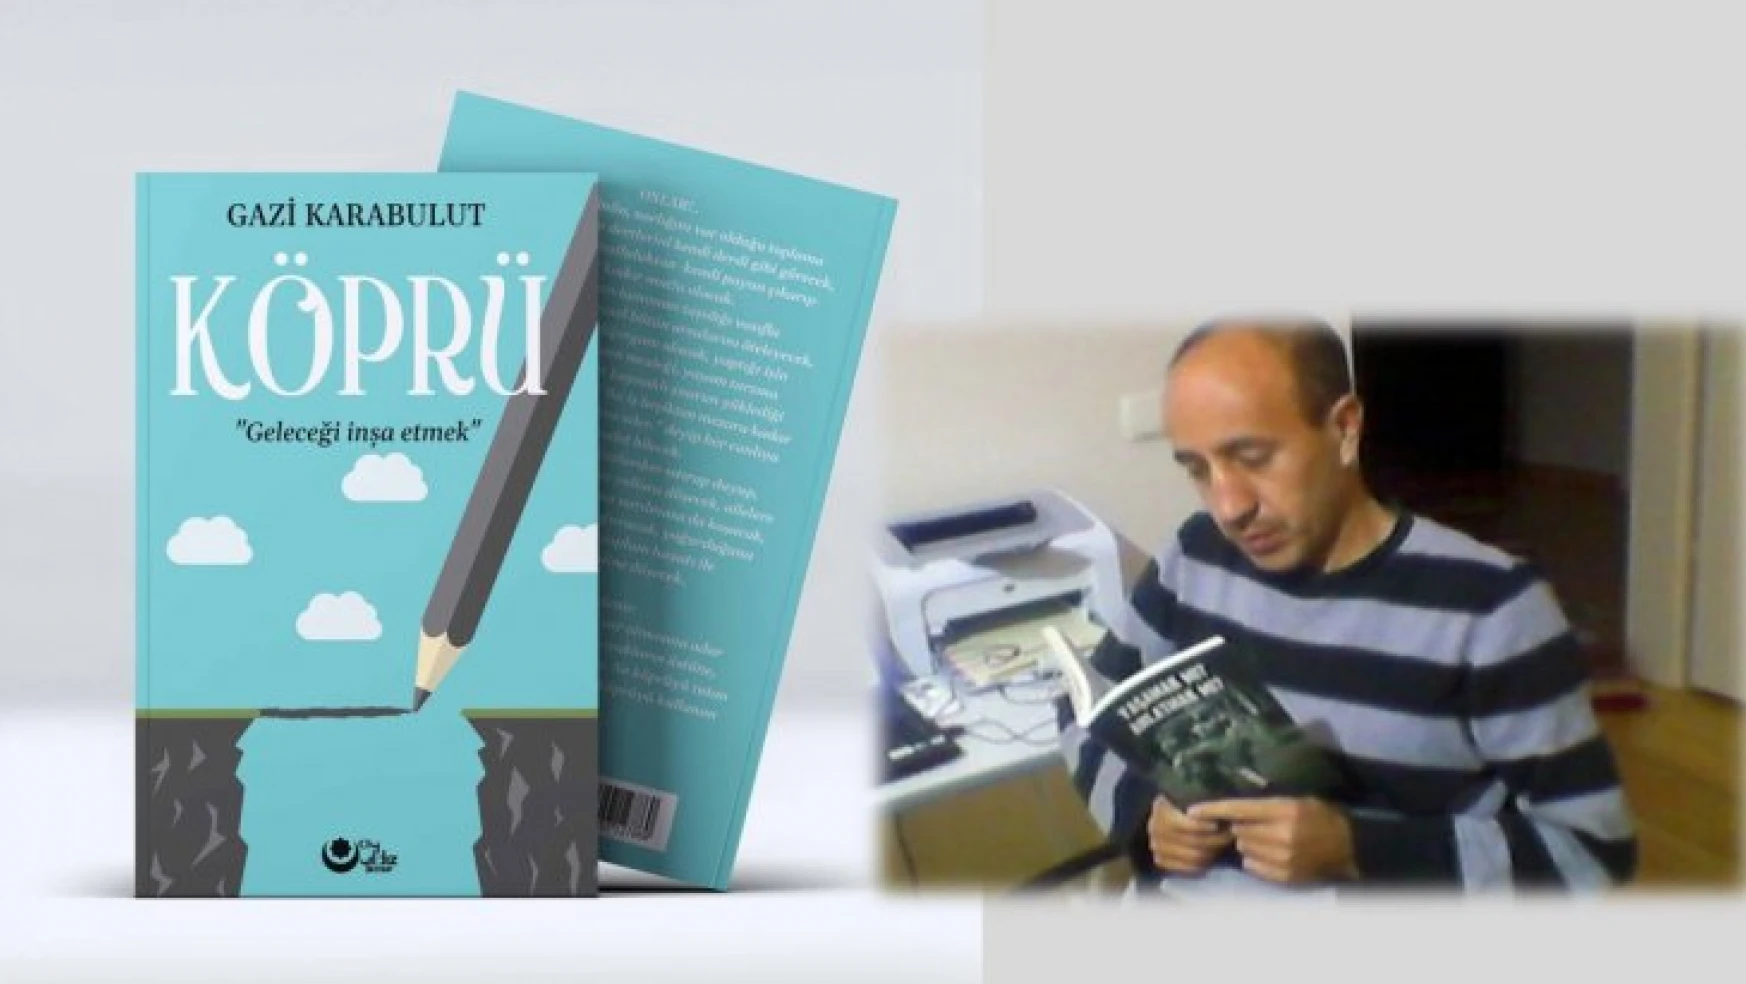 Eğitimci Yazar Gazi Karabulut'tan Üç Yeni Eser